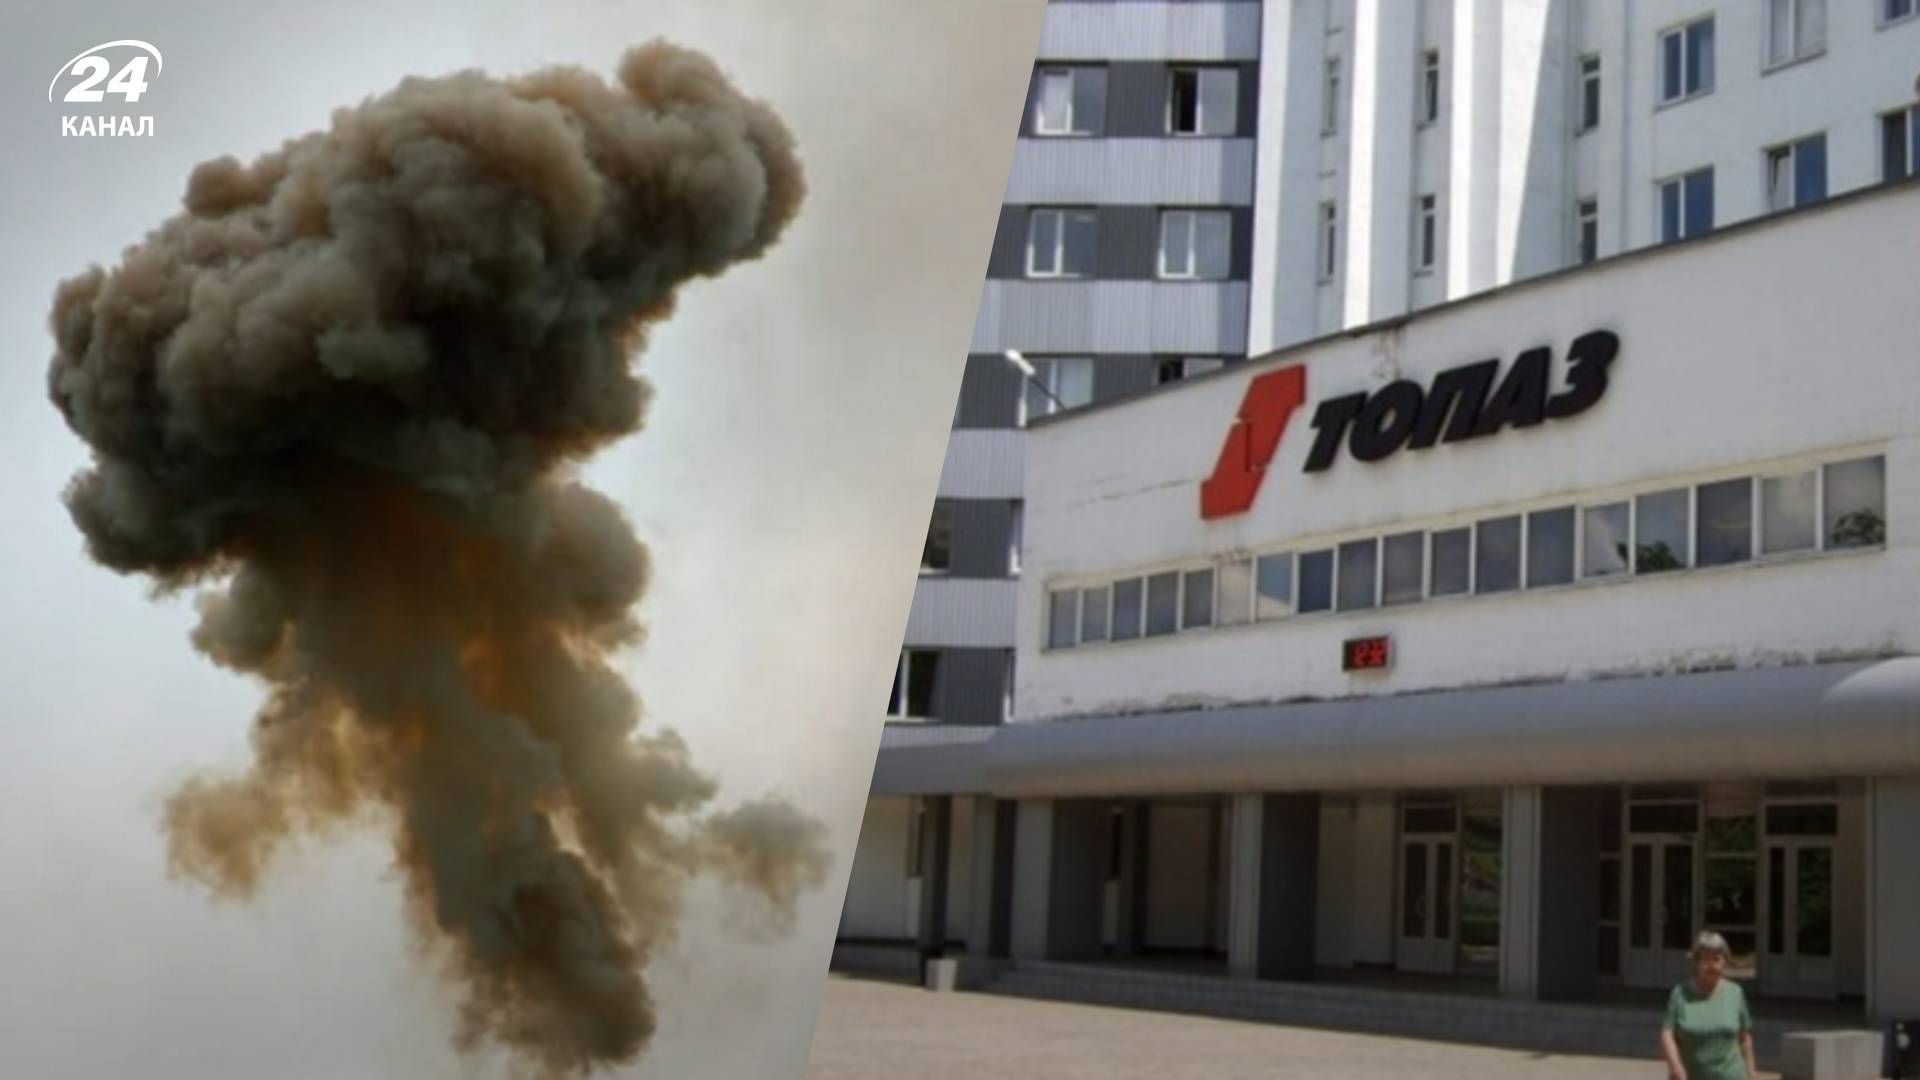 В оккупированном Донецке раздались взрывы в районе завода "Топаз" - 24 Канал